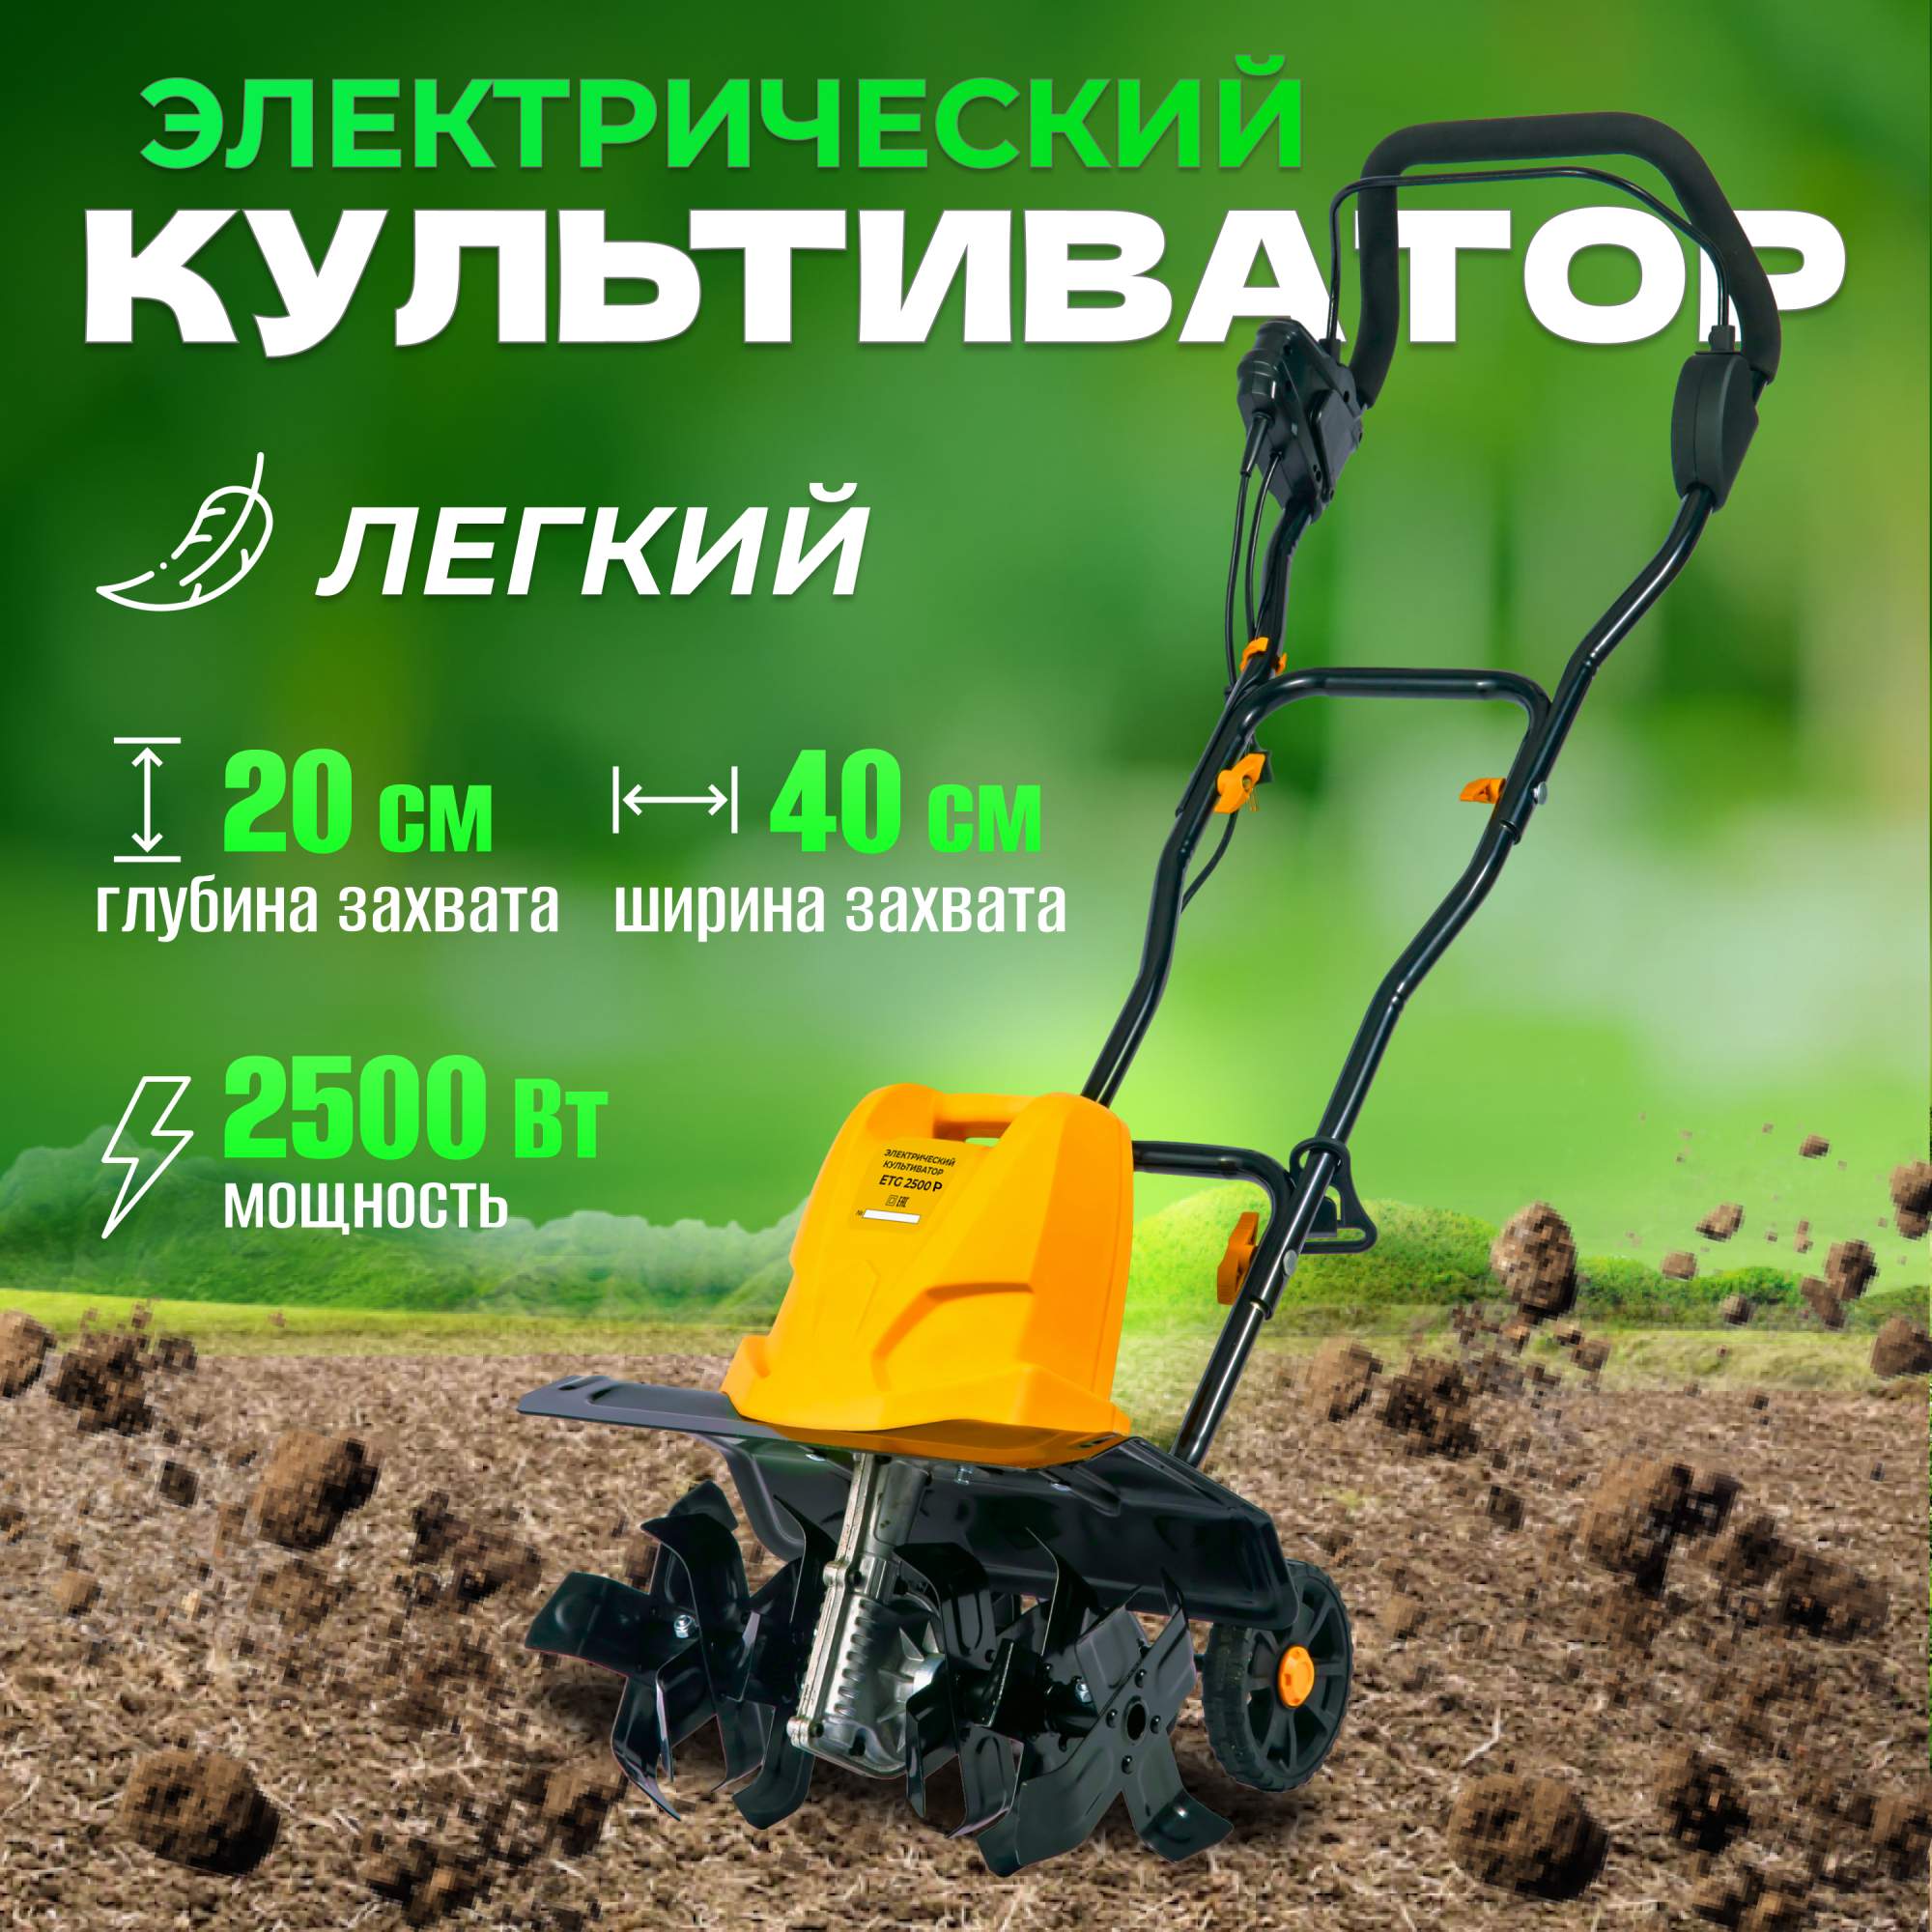 Электрический культиватор Partner for Garden ETG 2500 2500 Вт - купить в ELECTROLITE Москва (со склада СберМегаМаркет), цена на Мегамаркет